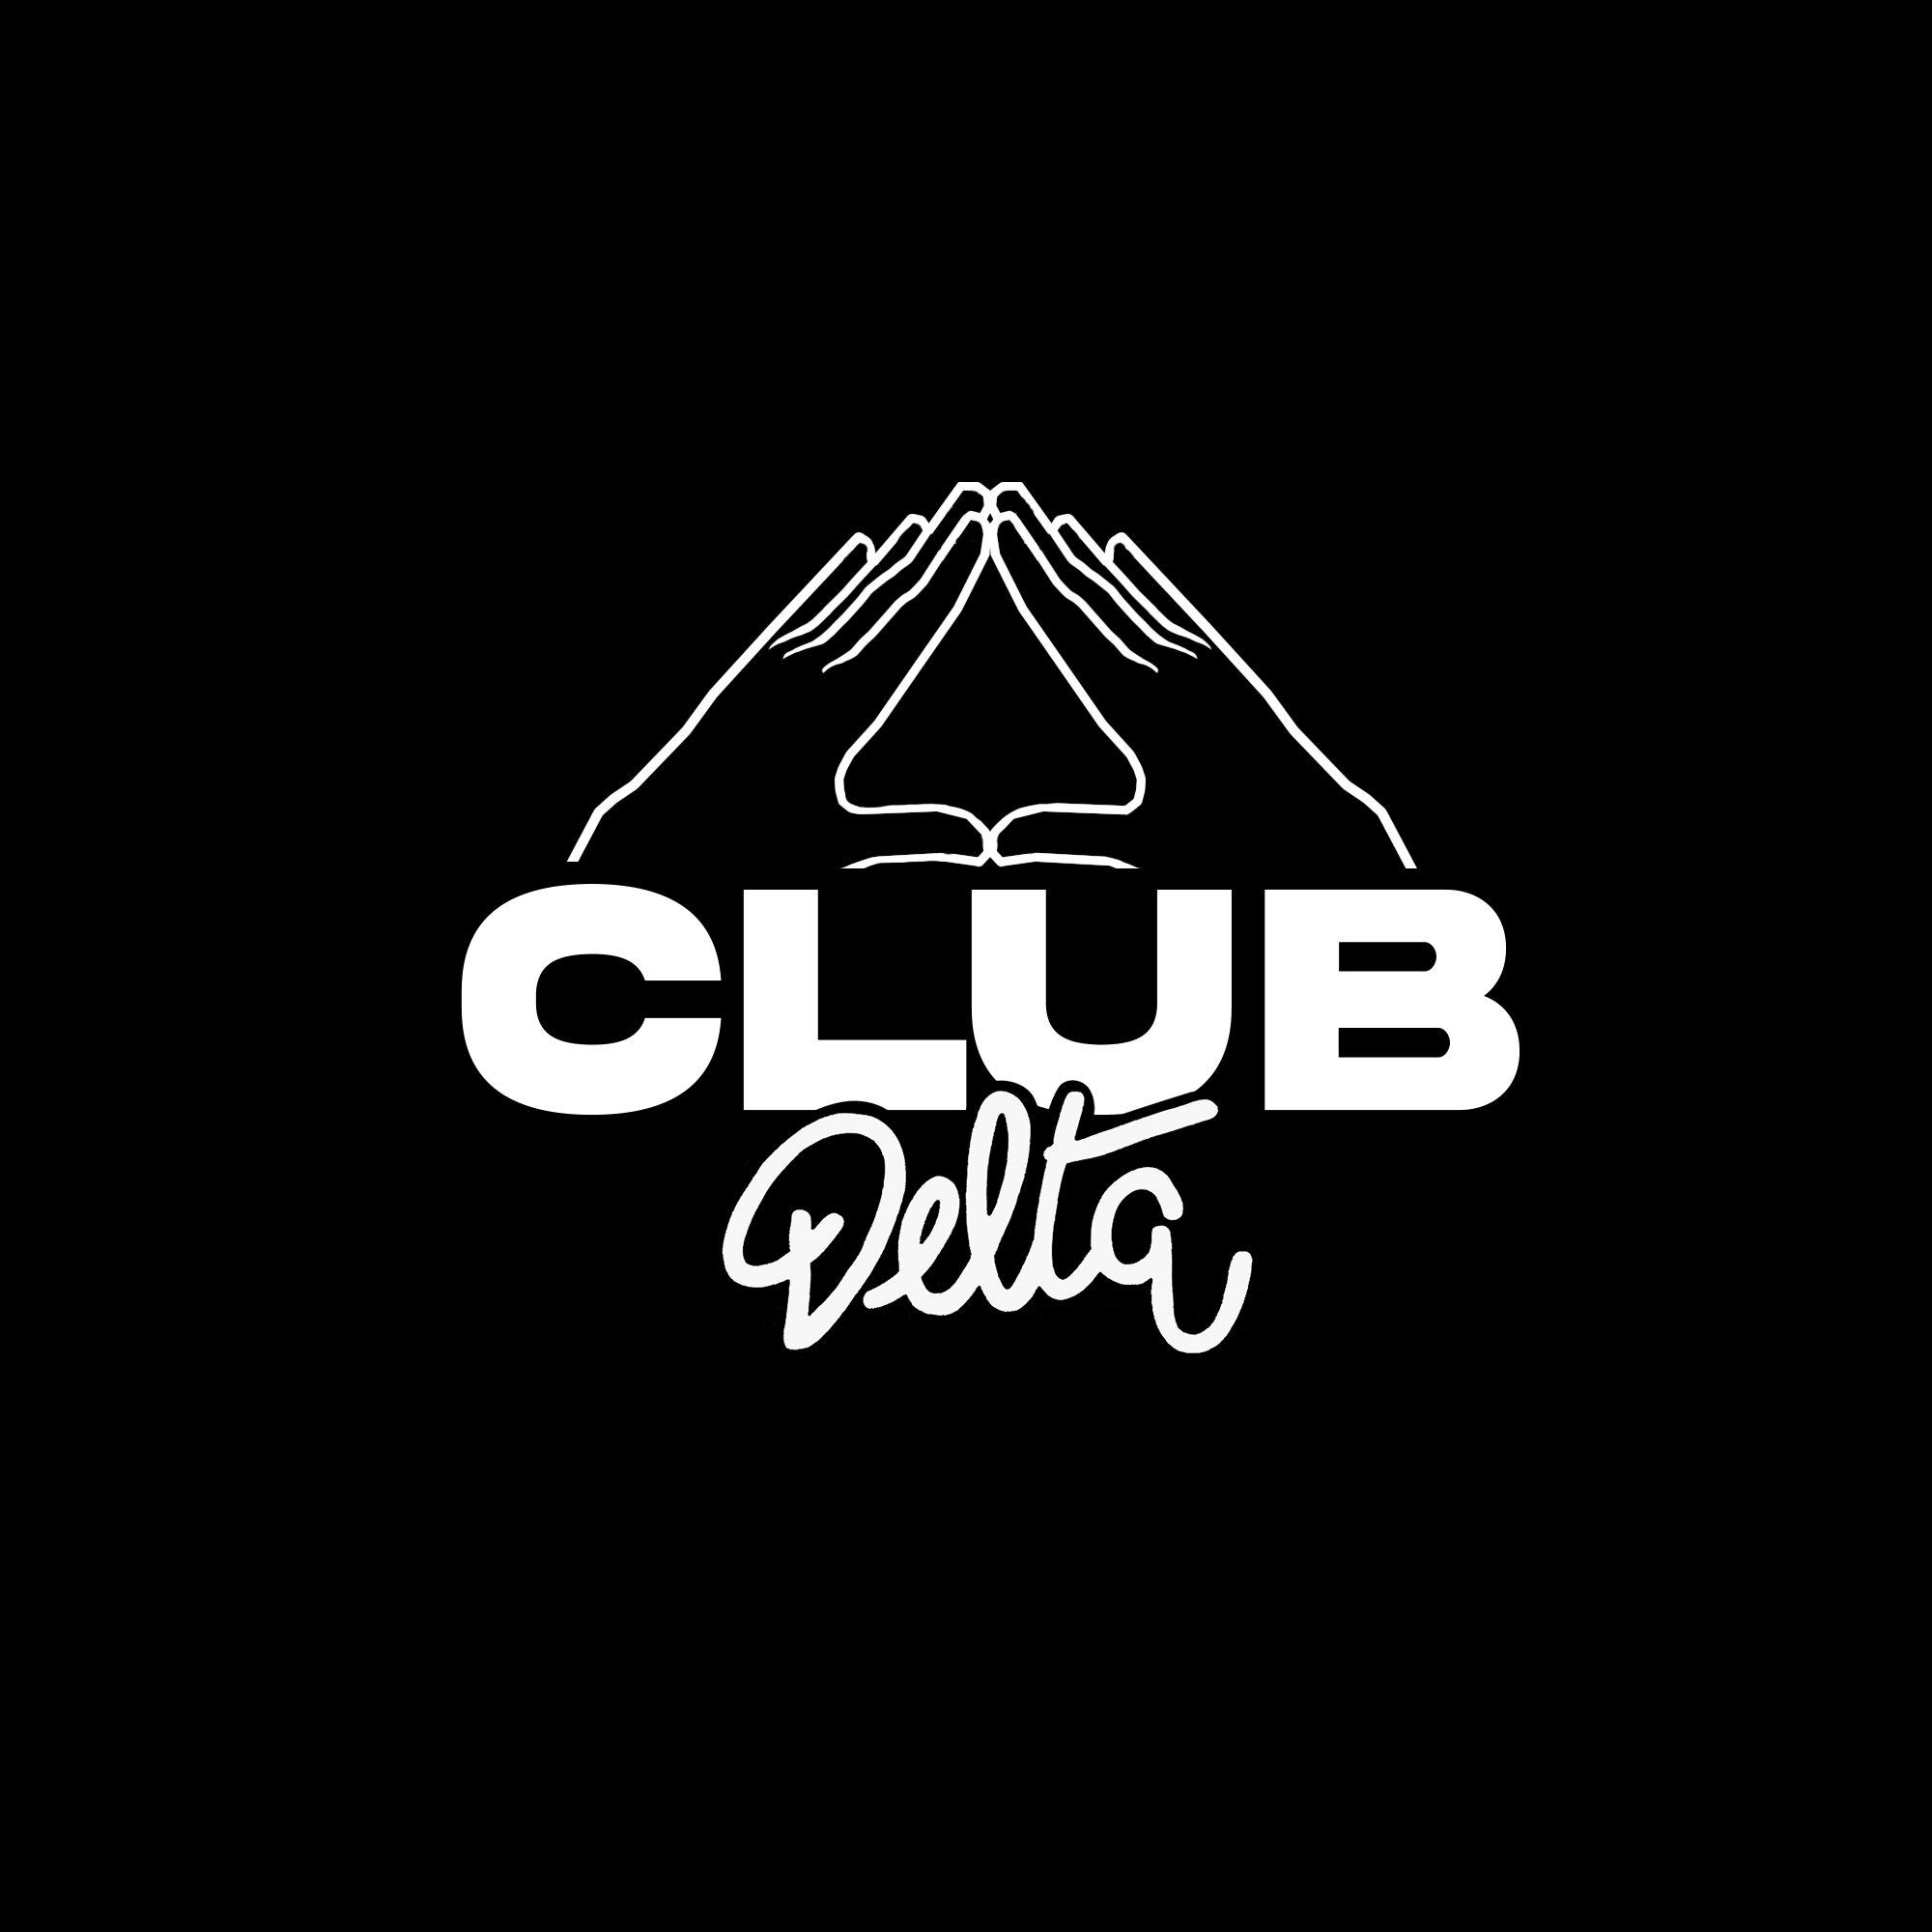 Logo Club Blanc Noir mains Club Delta